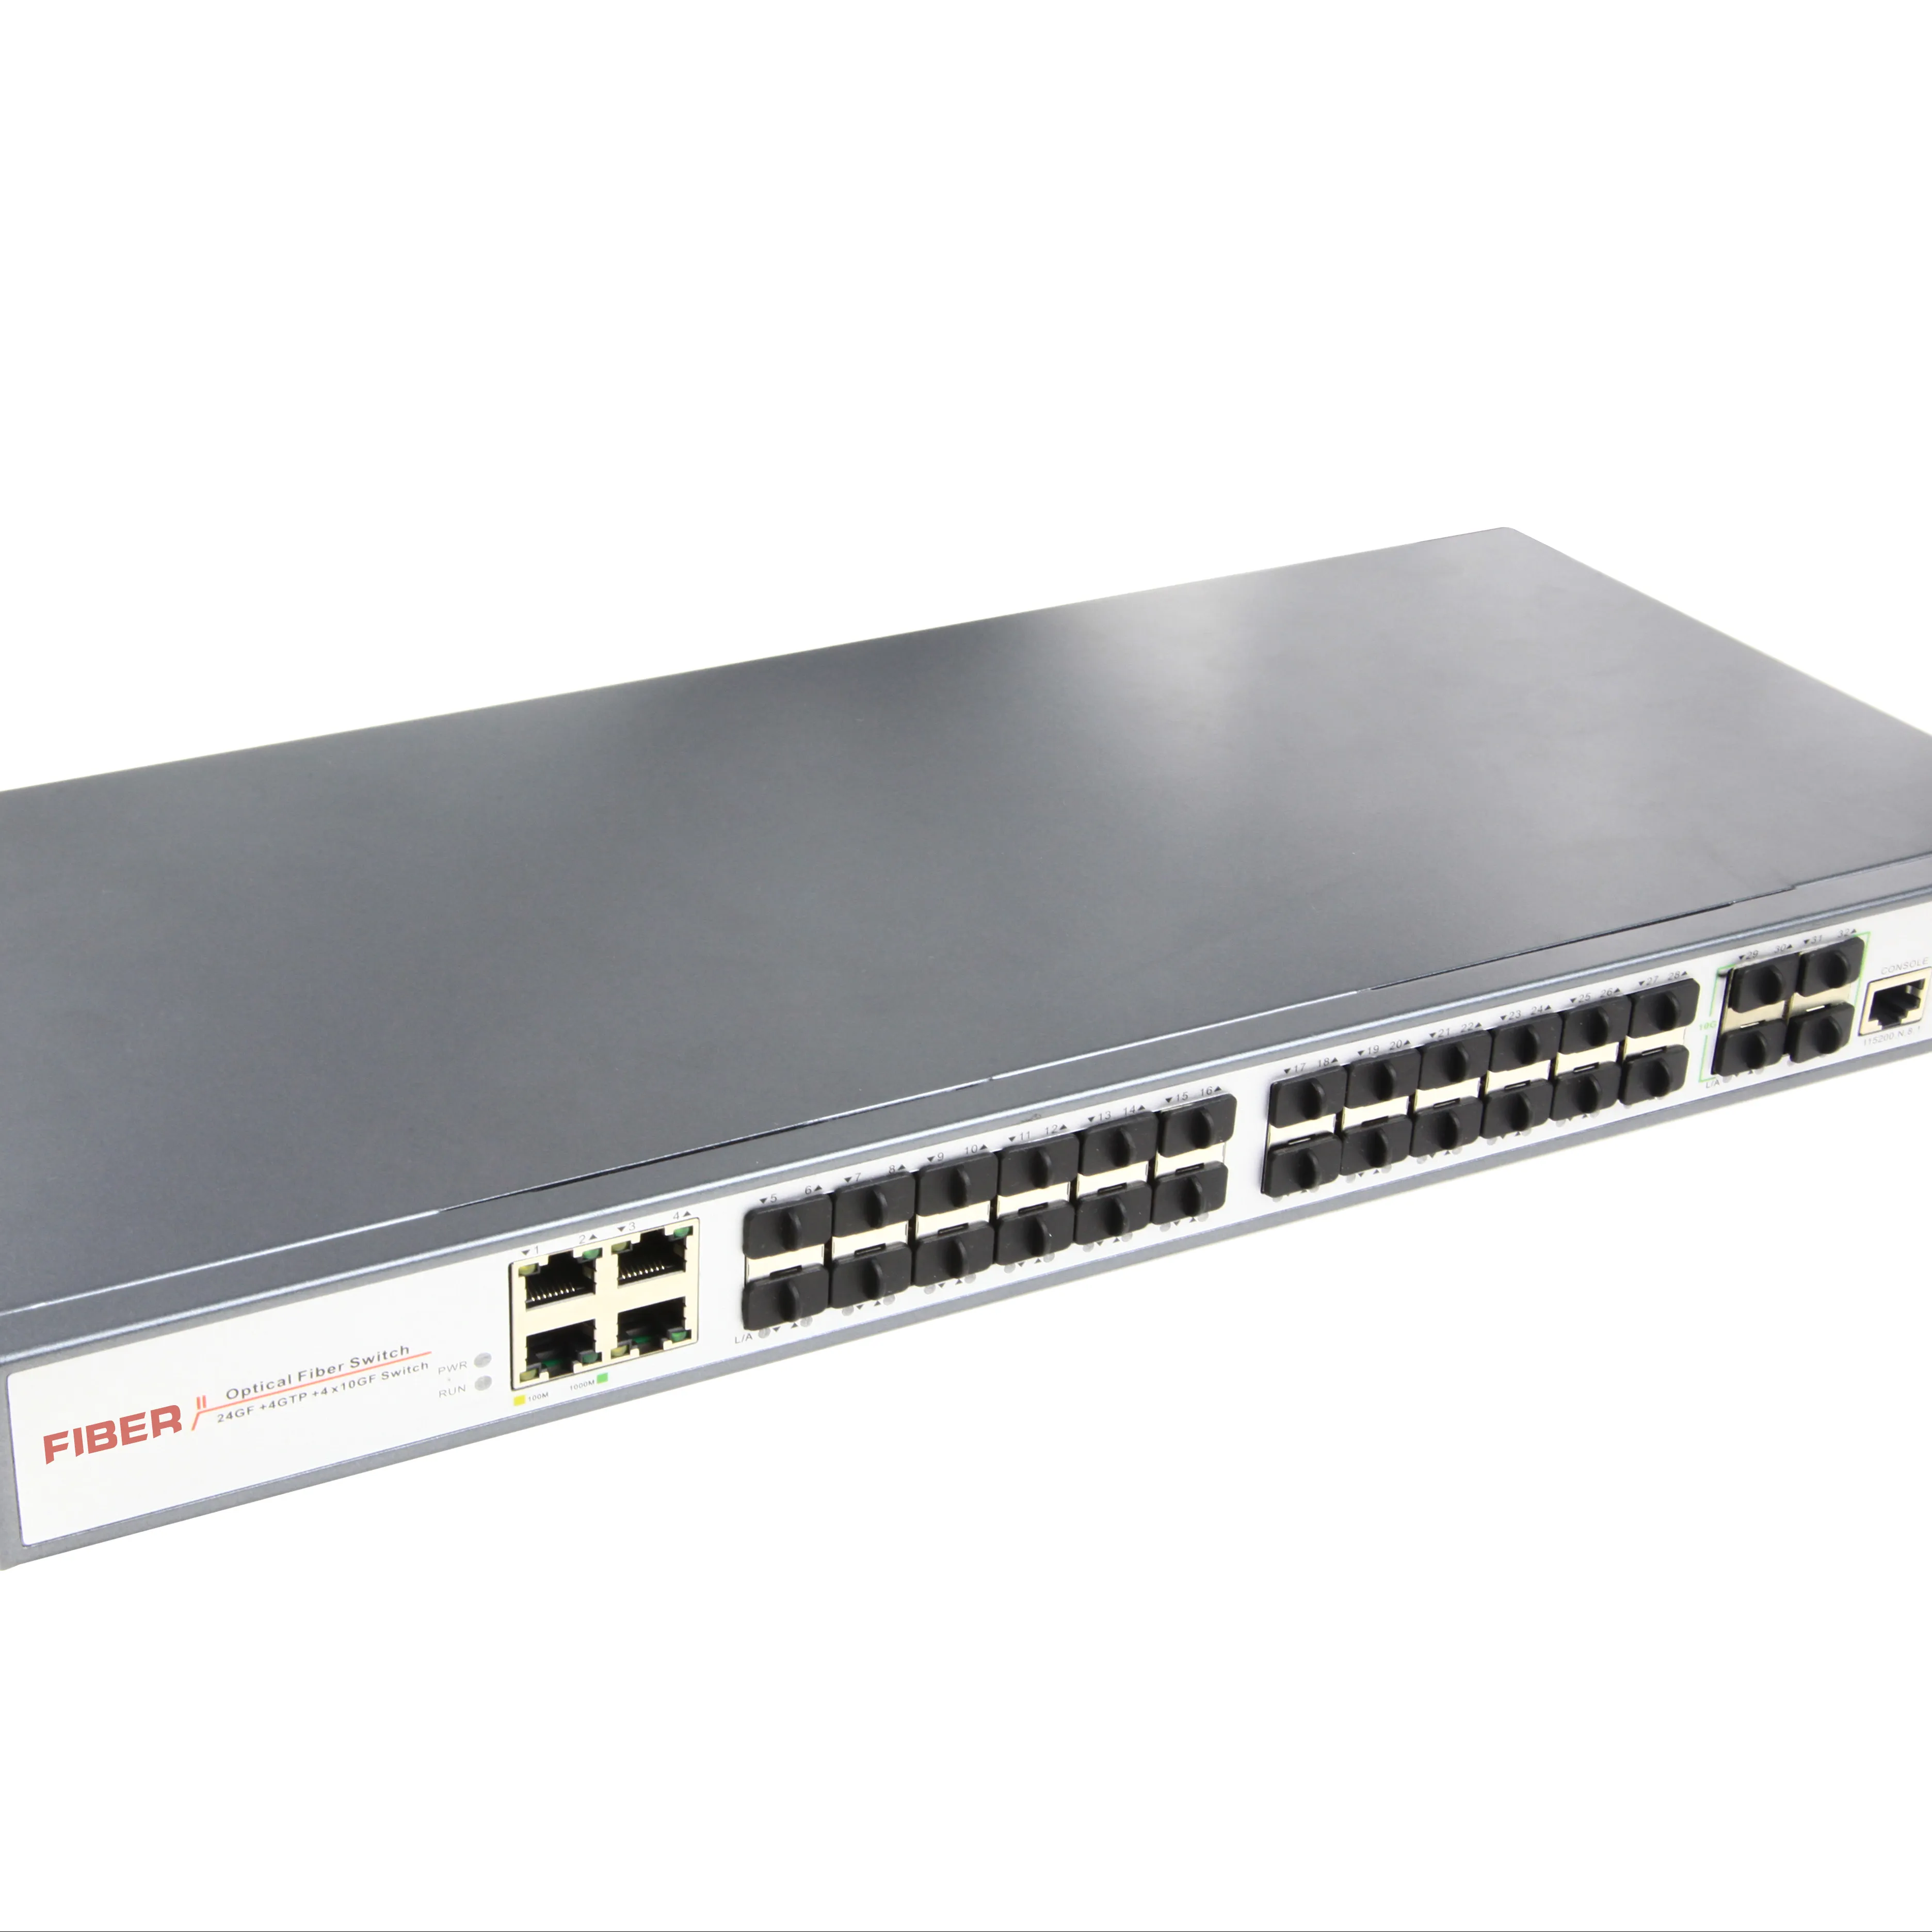 OEM, ODM yeni ürünler Yönetilen L2 32 port tam fiber ağ anahtarı EN IYI FIYAT (ONV31032FM)